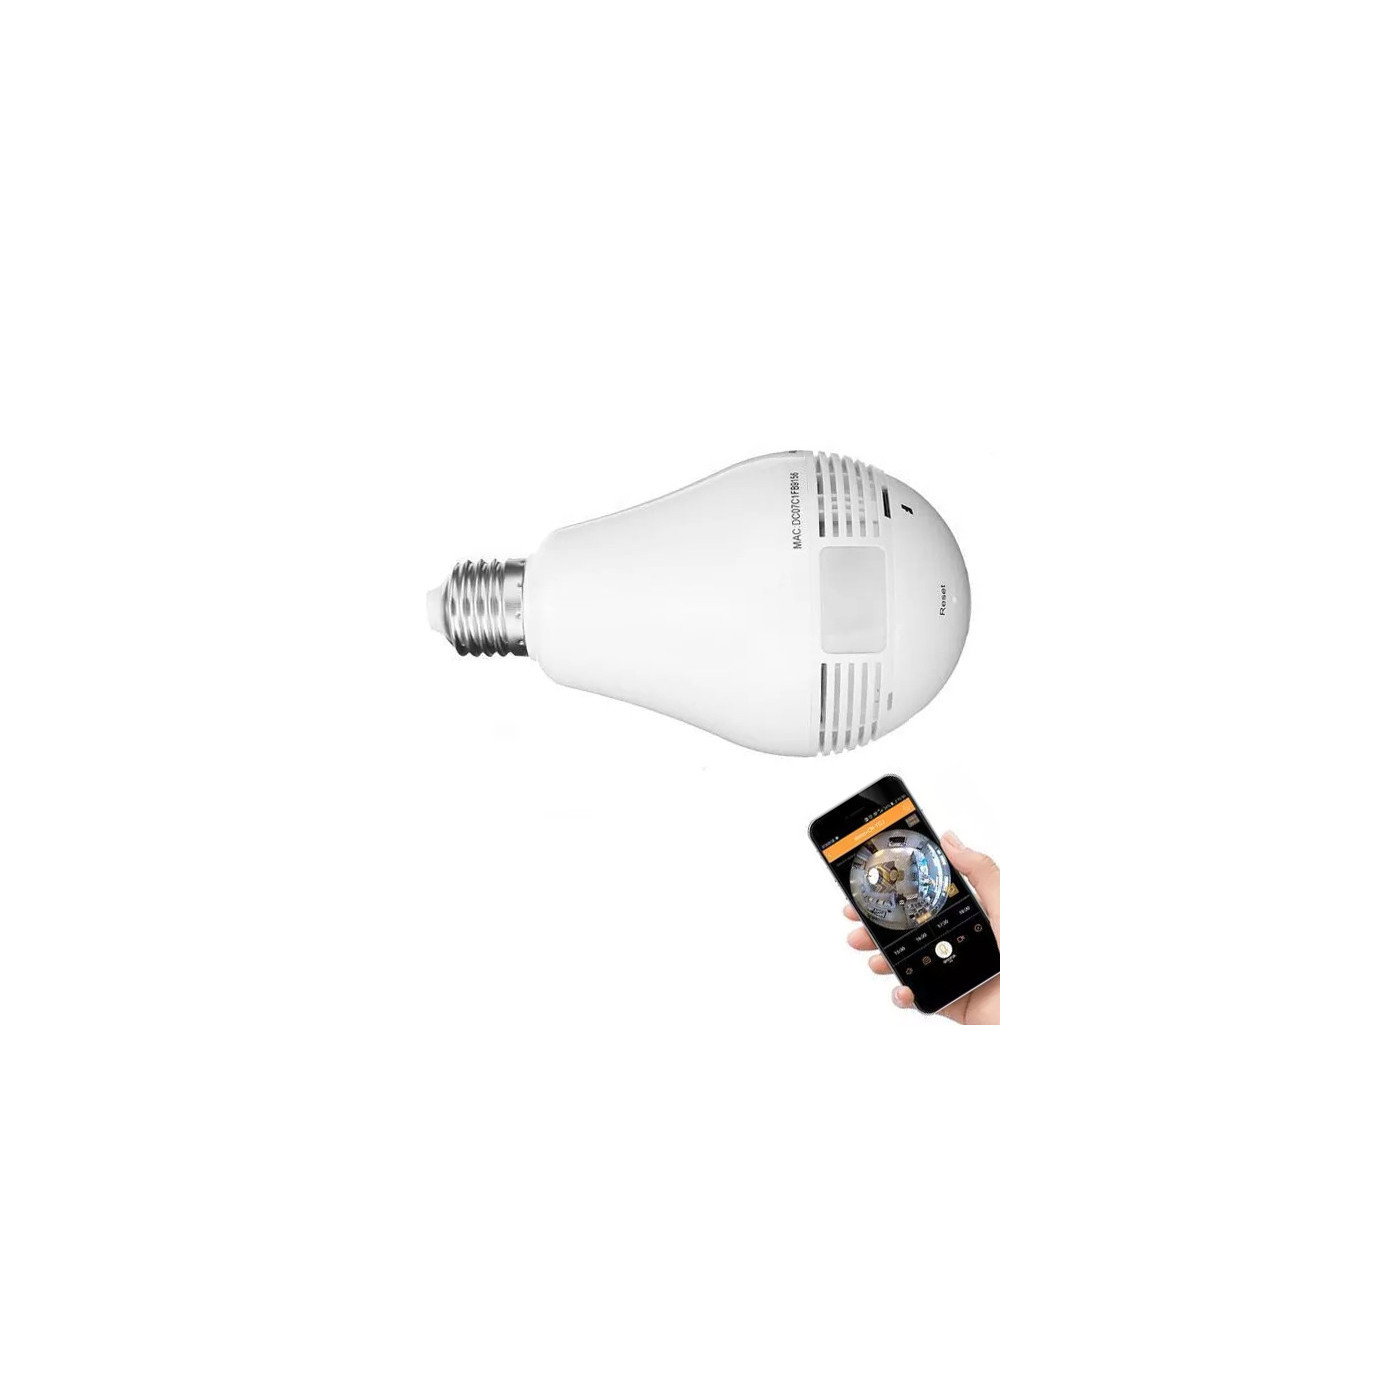 Cámara HD en lámpara, e27 para Android, IOS